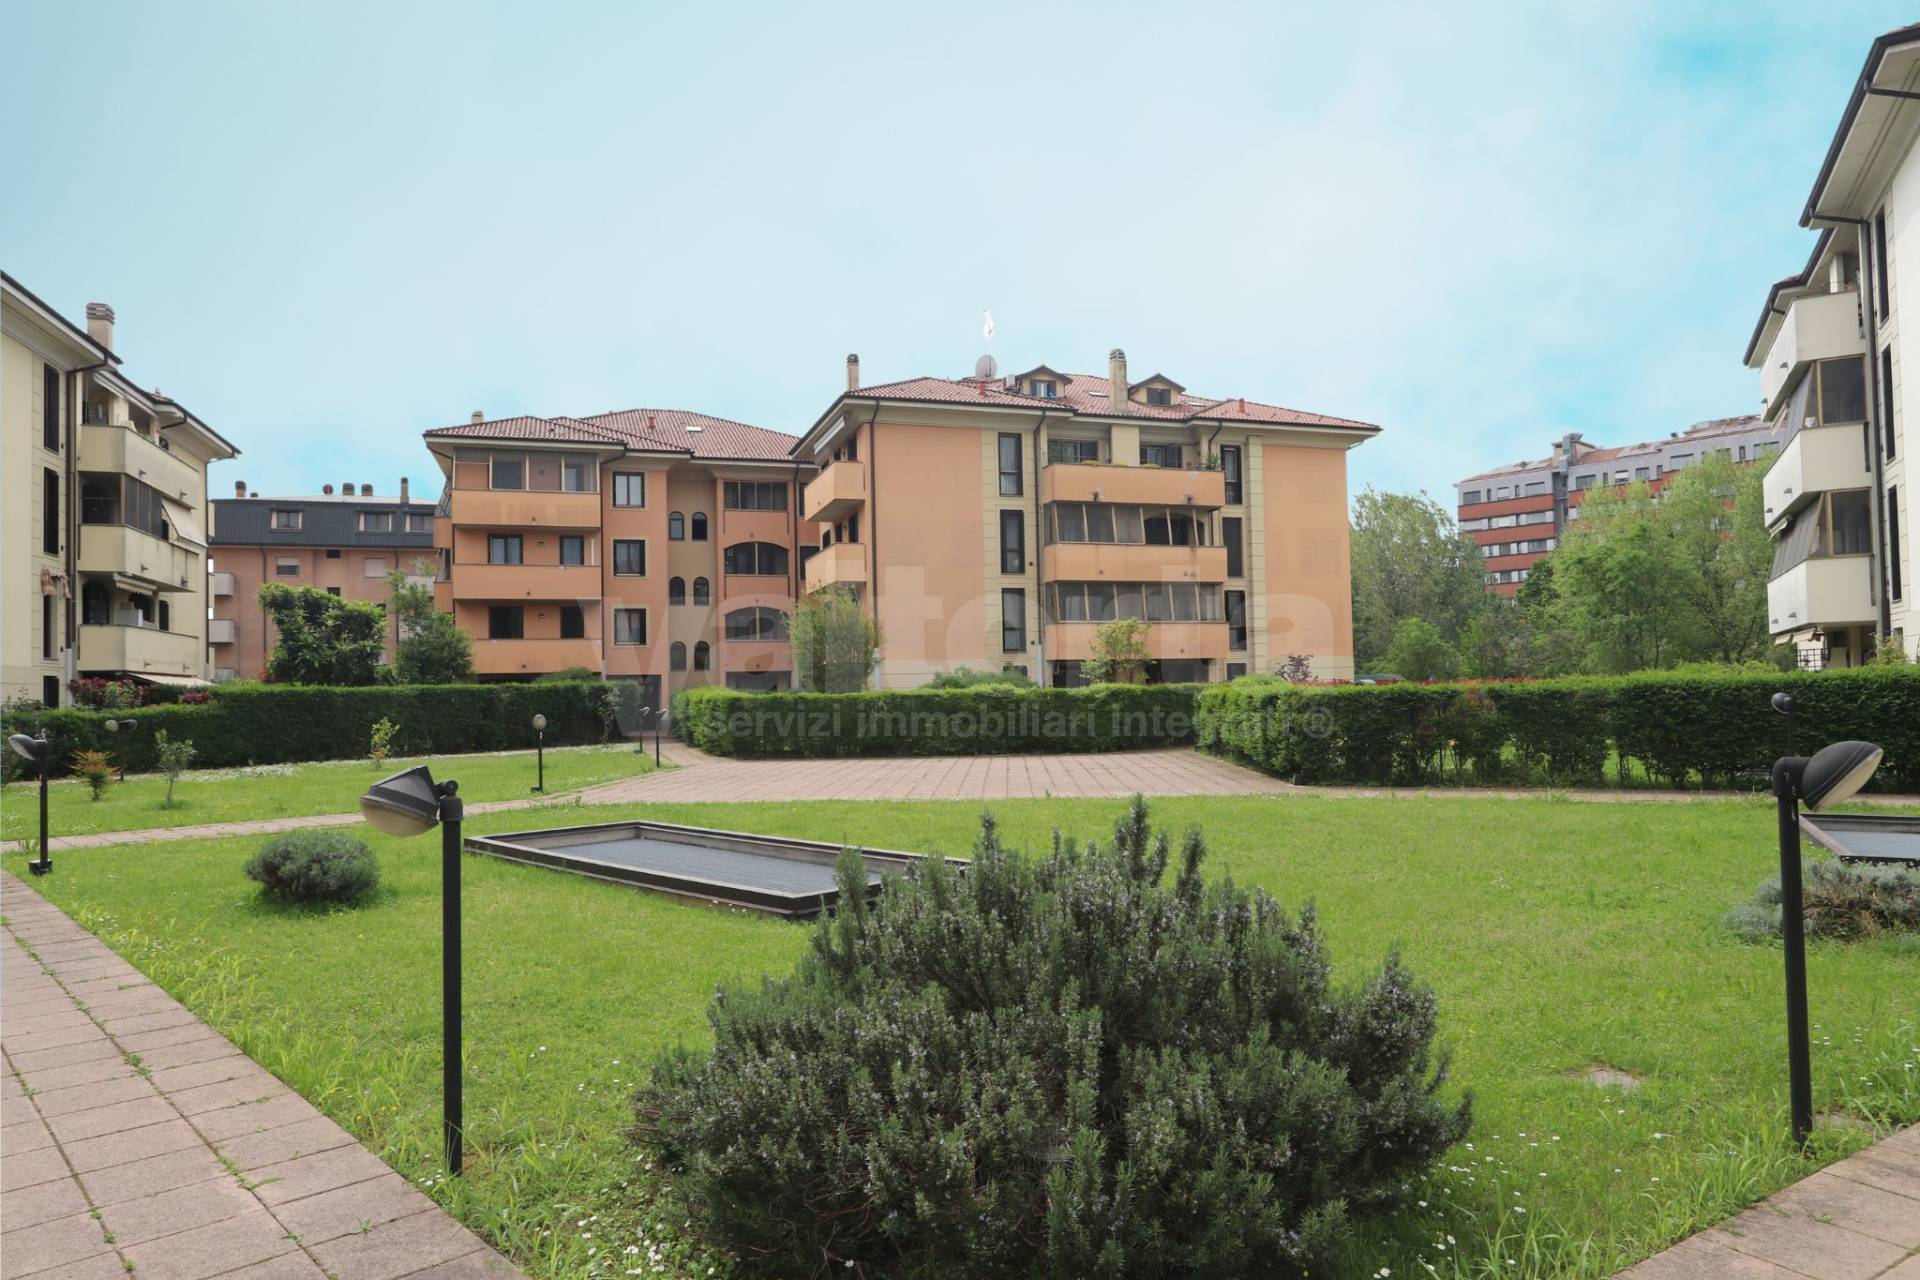 Appartamento in vendita a Melegnano, 3 locali, prezzo € 268.000 | PortaleAgenzieImmobiliari.it